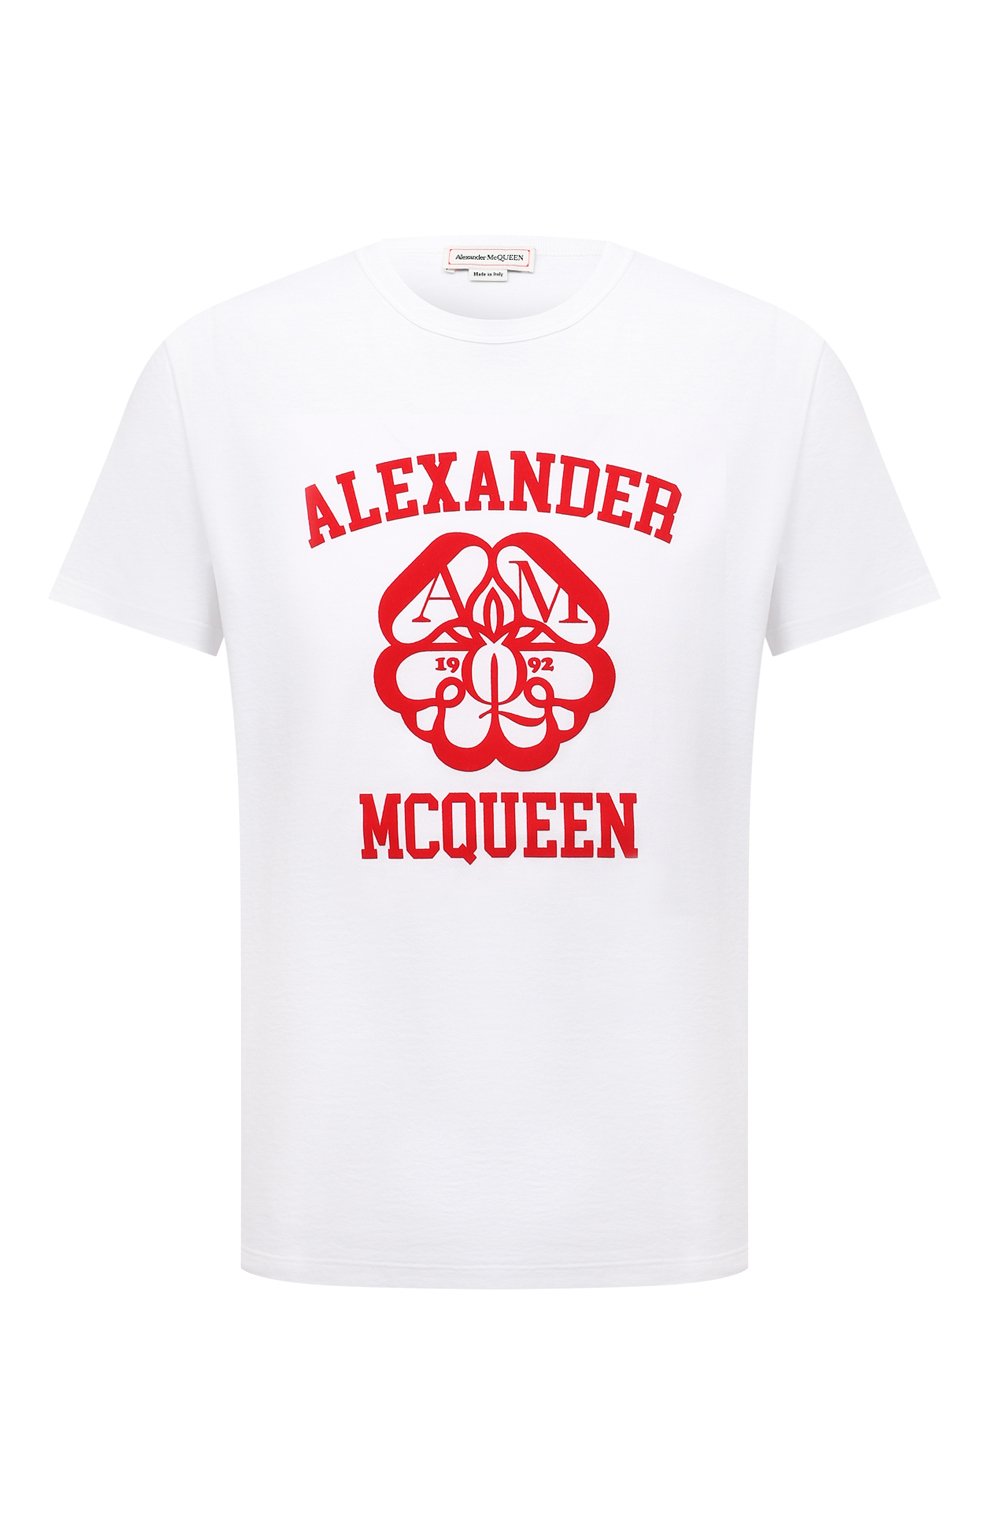 Футболки Alexander McQueen, Хлопковая футболка Alexander McQueen, Италия, Белый, Хлопок: 100%;, 12453859  - купить